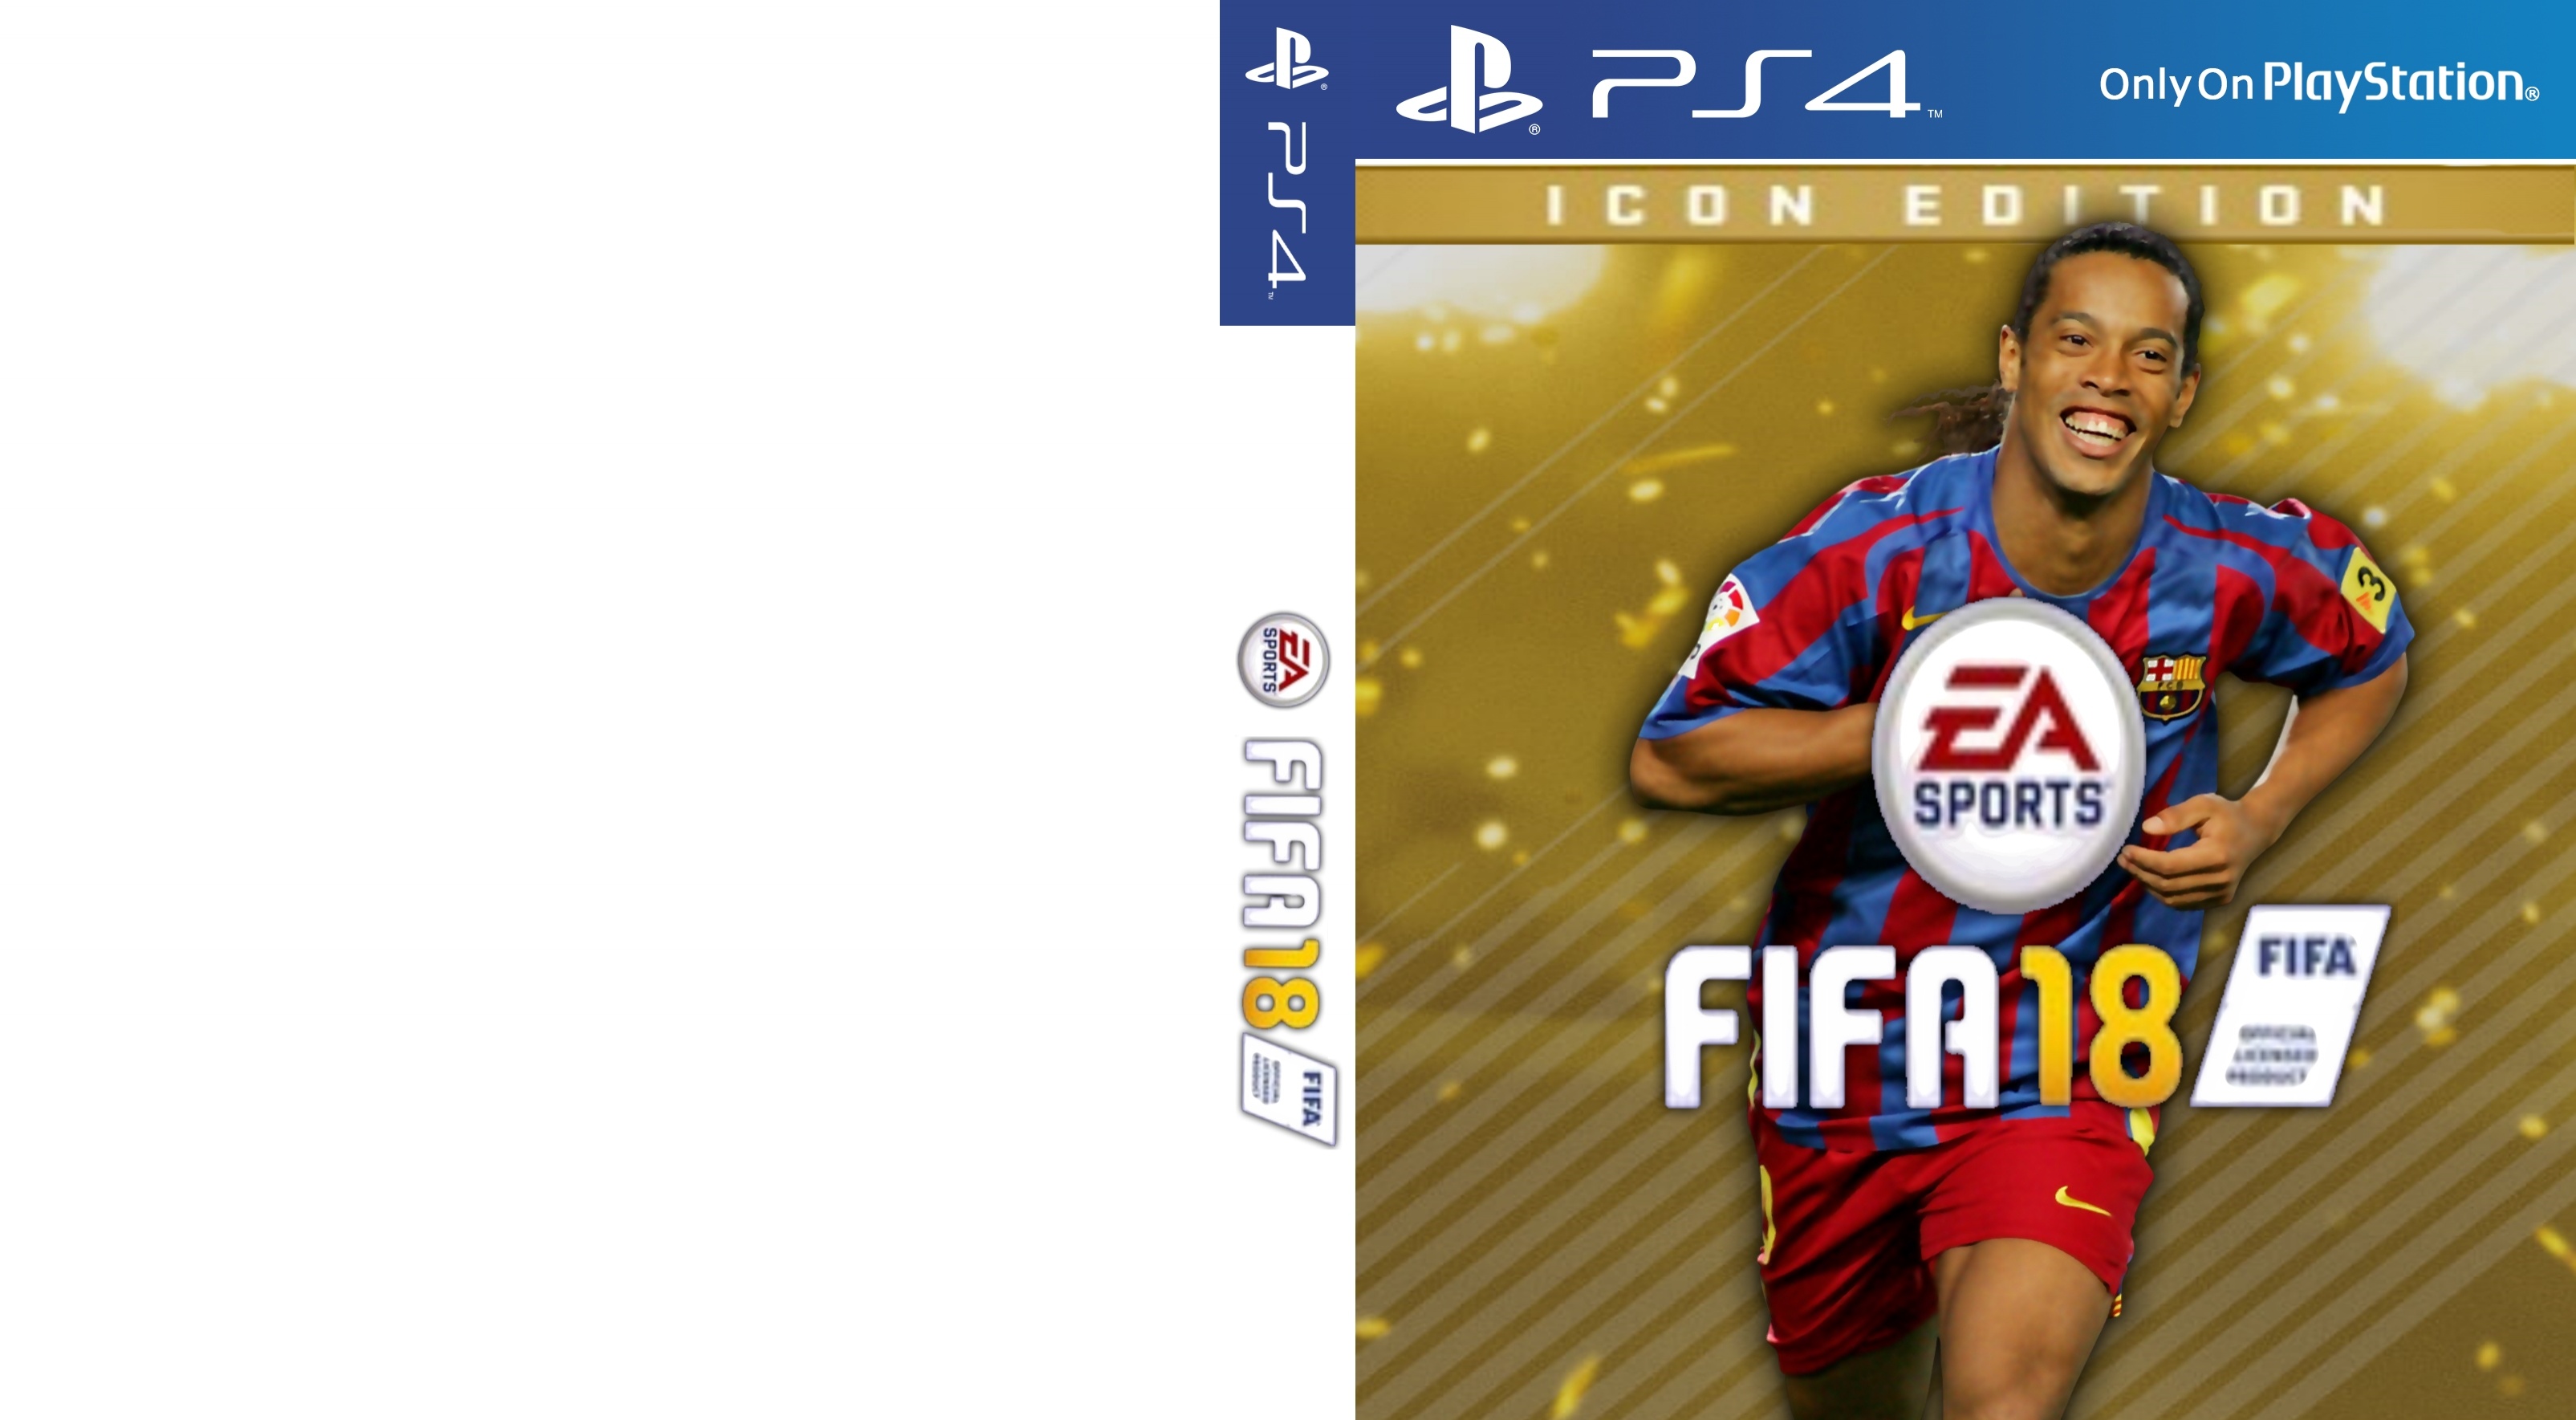 FIFA 18 l Icon Edition box cover